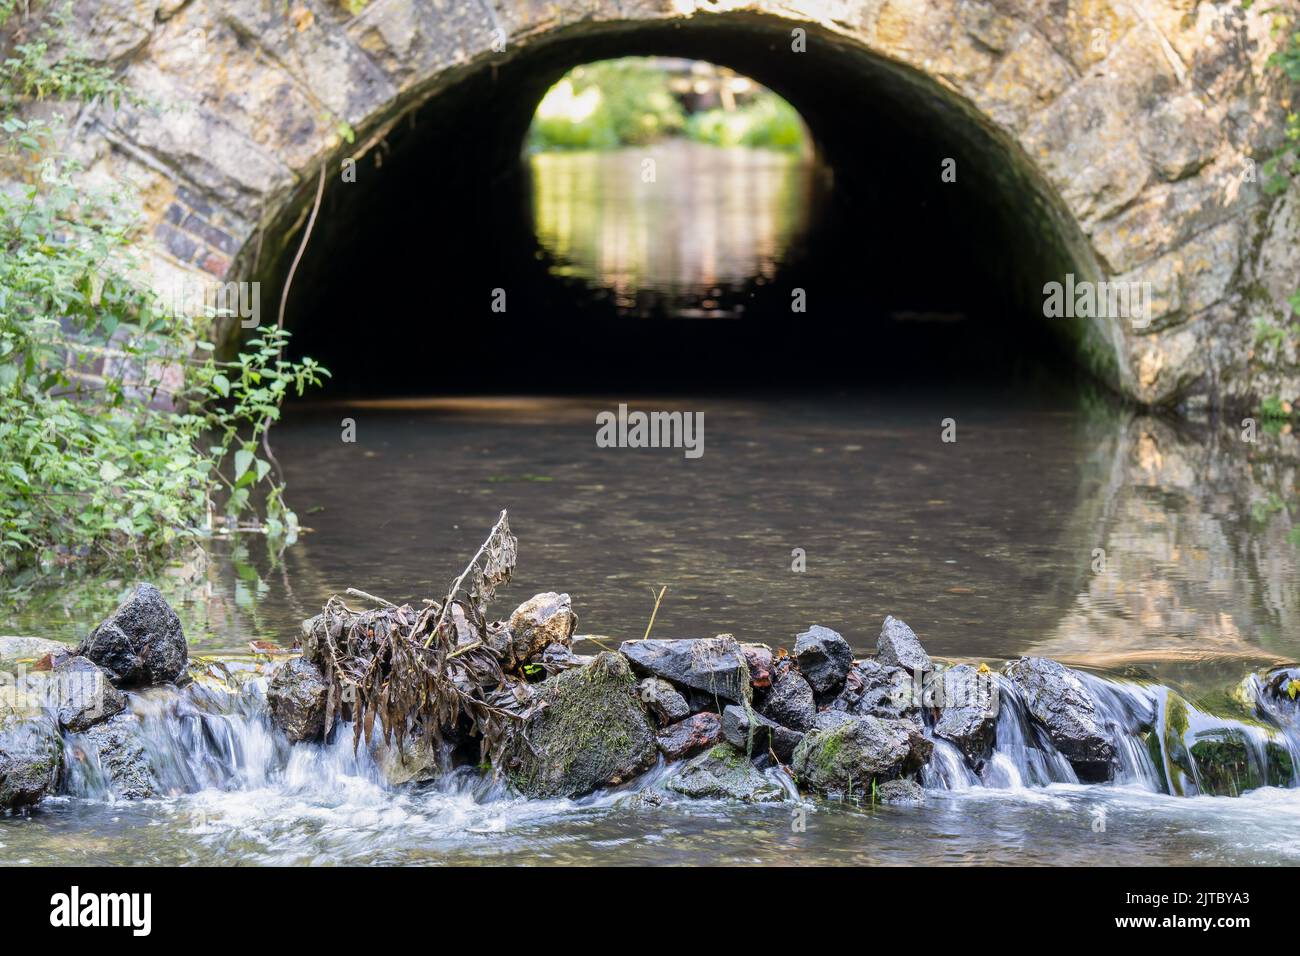 vue rapprochée d'une rivière à craie qui s'écoule d'un tunnel voûté en pierre et au-dessus d'une petite cascade en pierre Banque D'Images